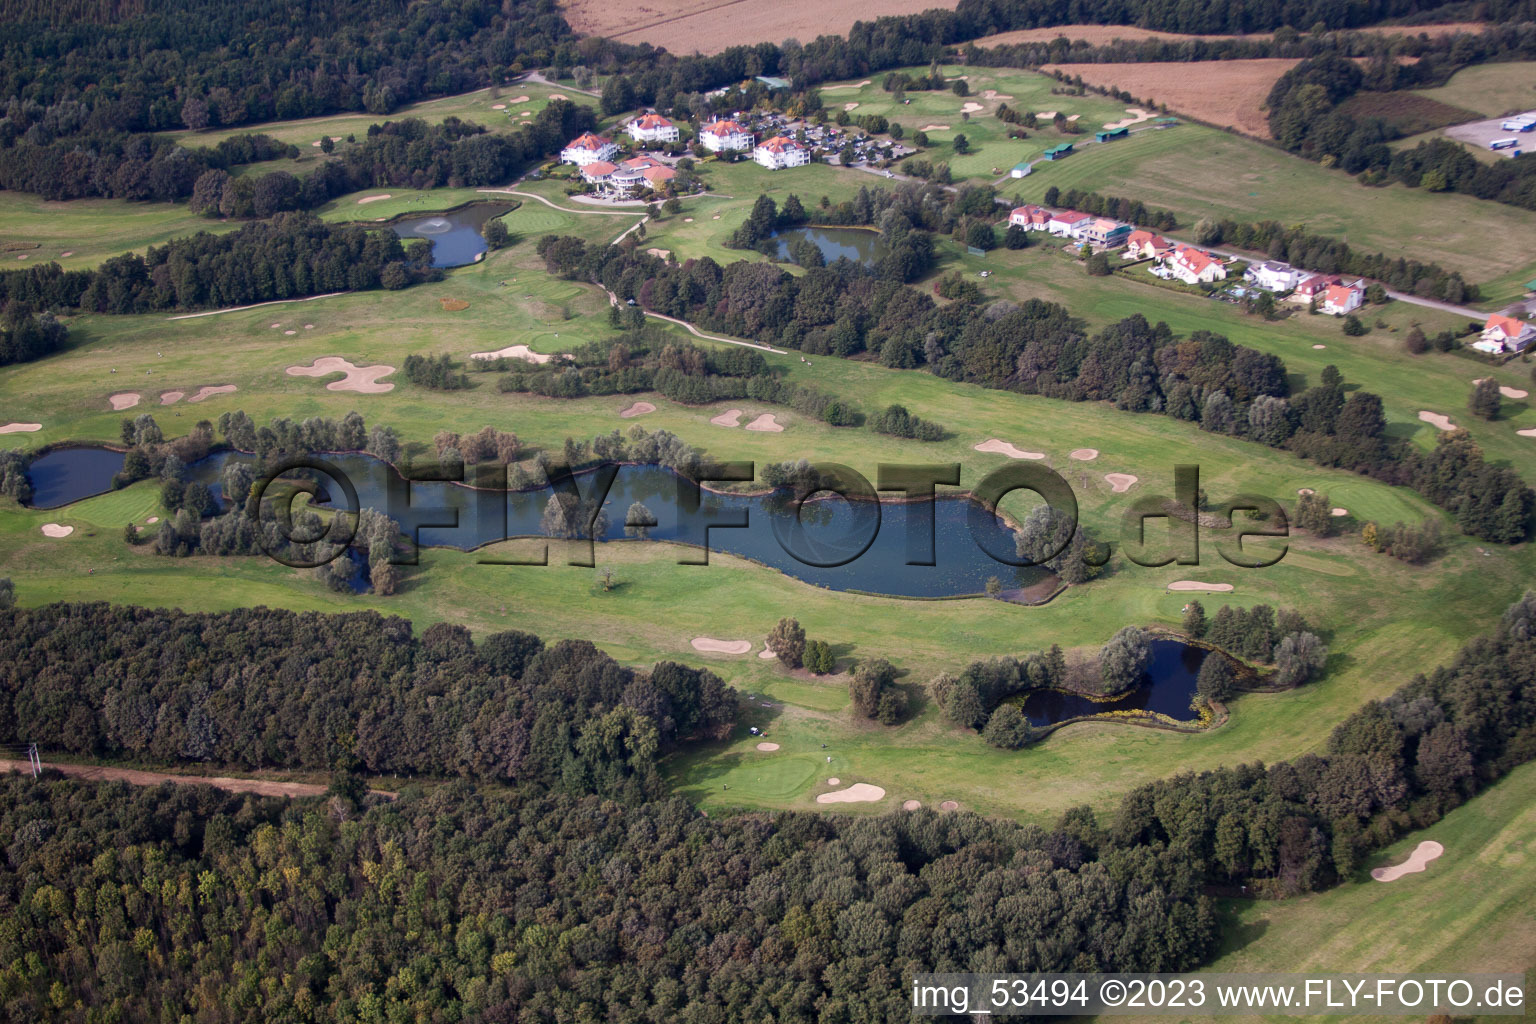 Drone recording of Baden-Baden Golf Club Soufflenheim in Soufflenheim in the state Bas-Rhin, France